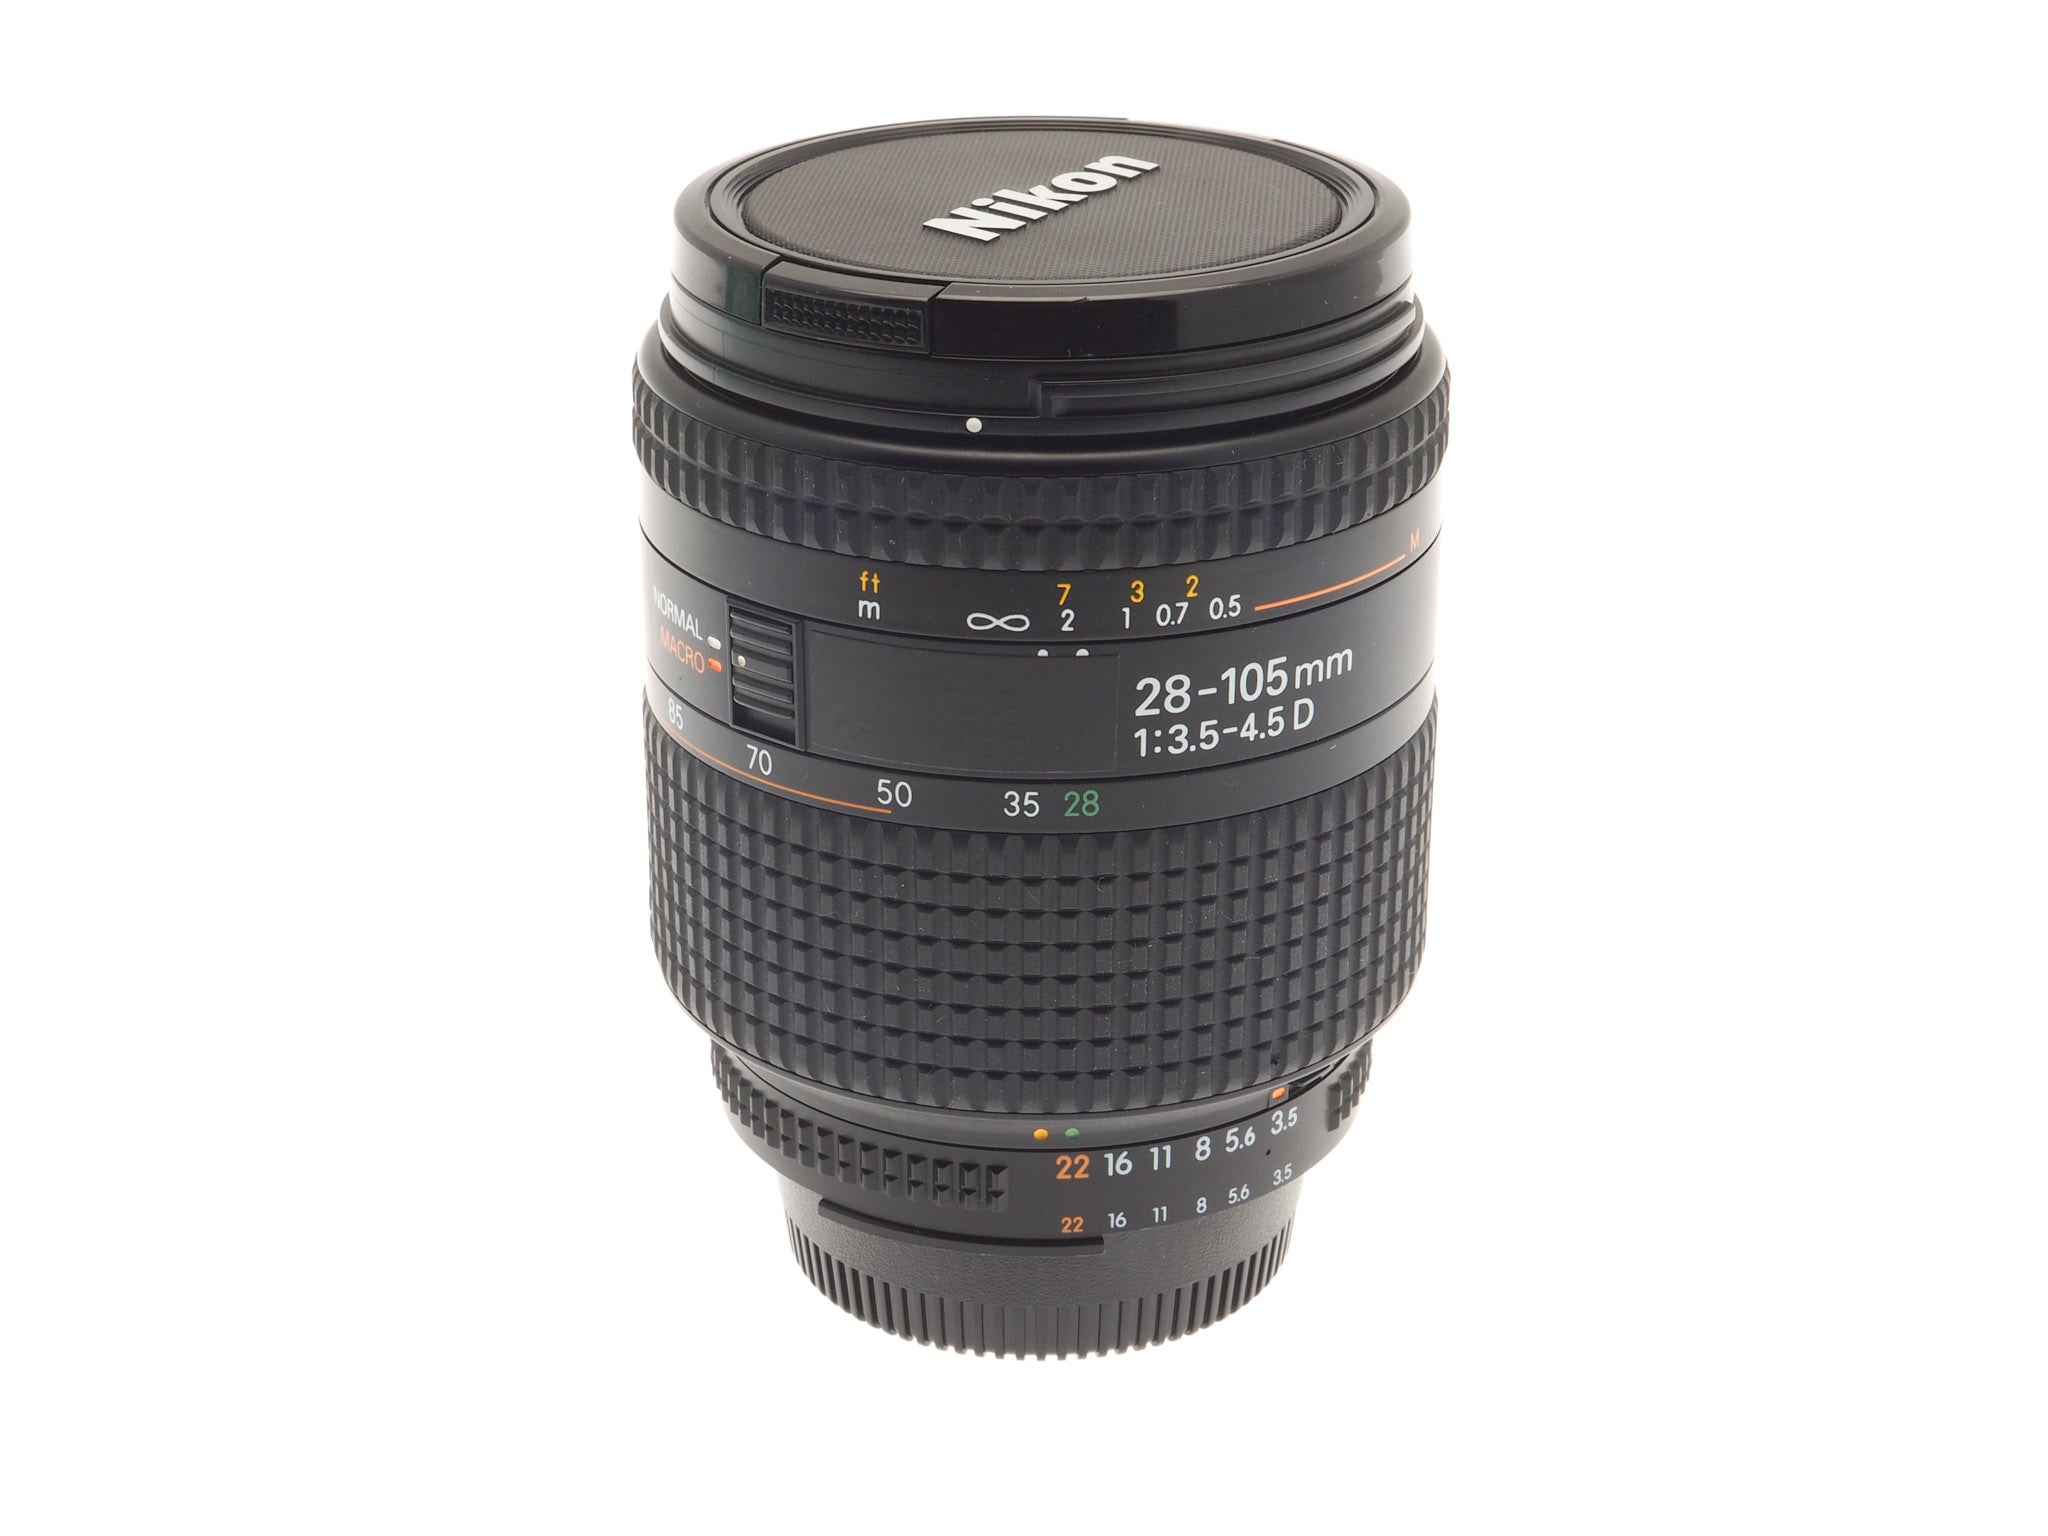 Nikon 28-105mm f3.5-4.5 D AF Nikkor - Lens